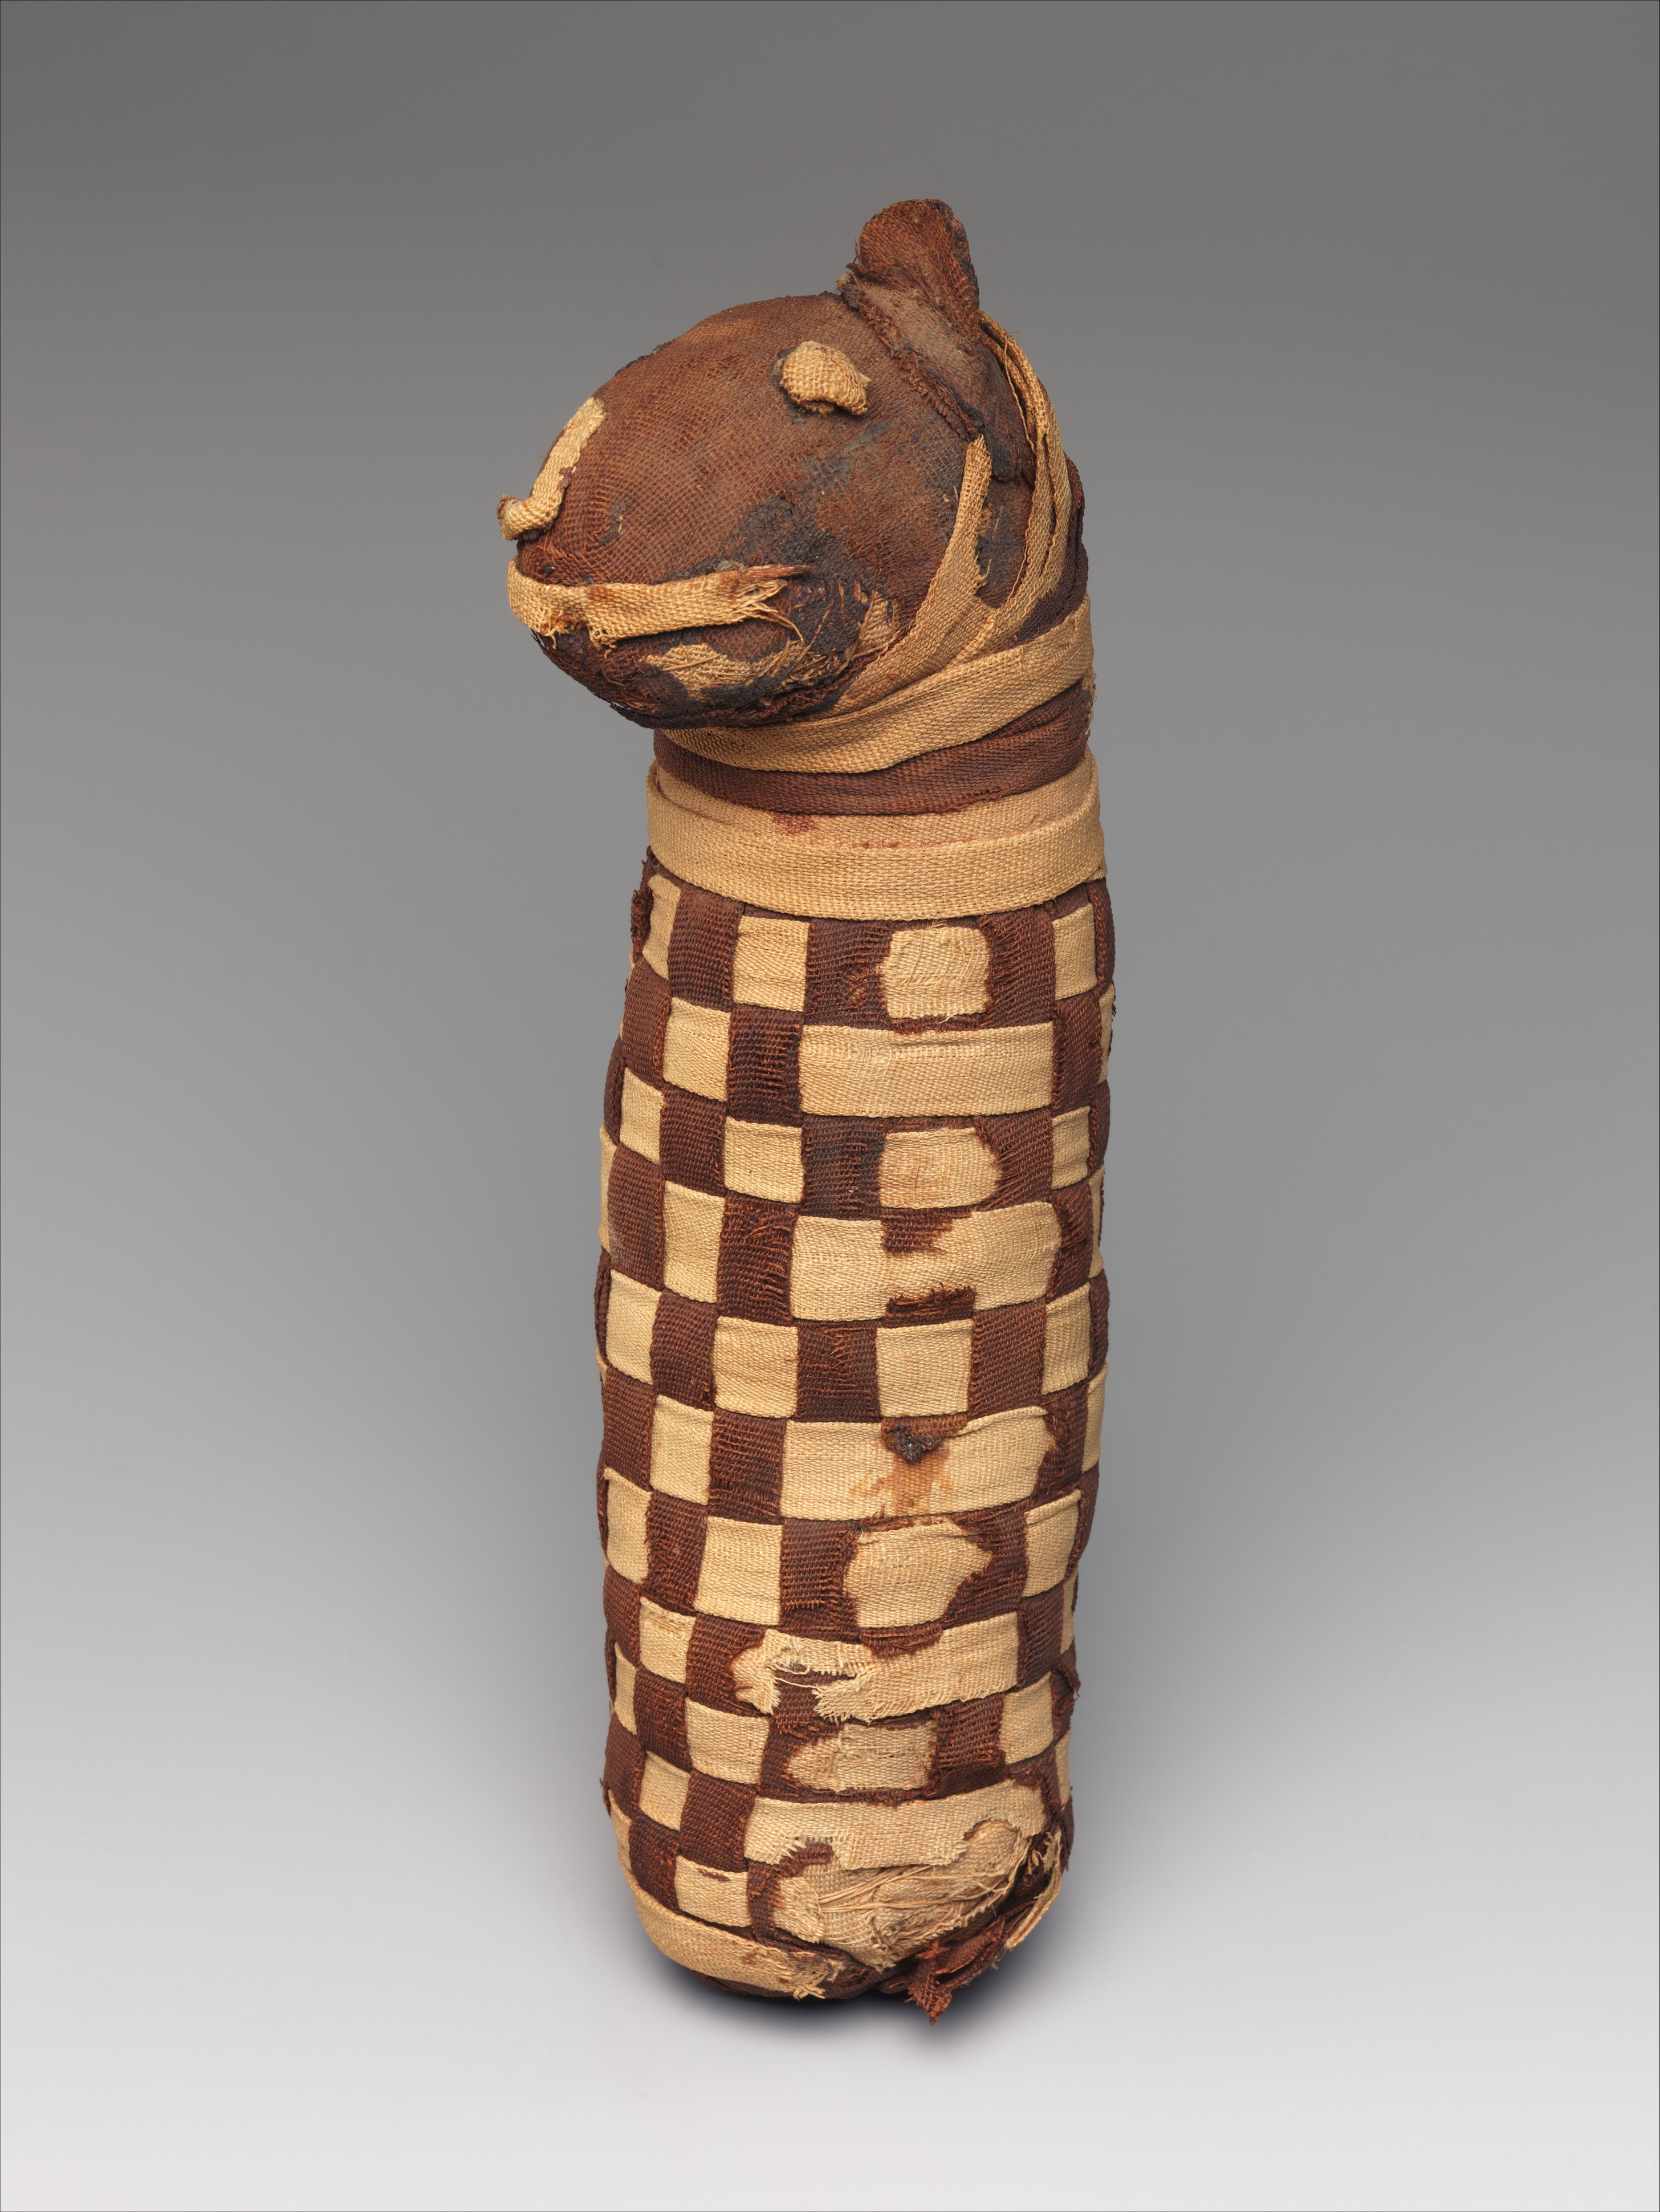 有狗骨头的神圣动物木乃伊 by 未知艺术家  - 约公元前400年–公元100年 - 28 x 6.5 x 10 厘米 